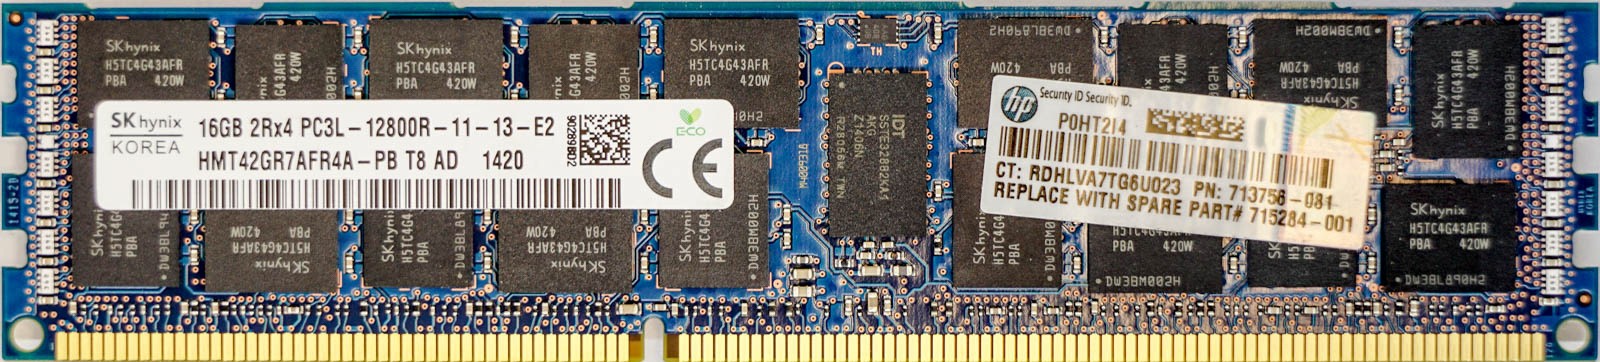 HP (713756-081) - 16GB PC3L-12800R (DDR3-1600Mhz, 2RX4)